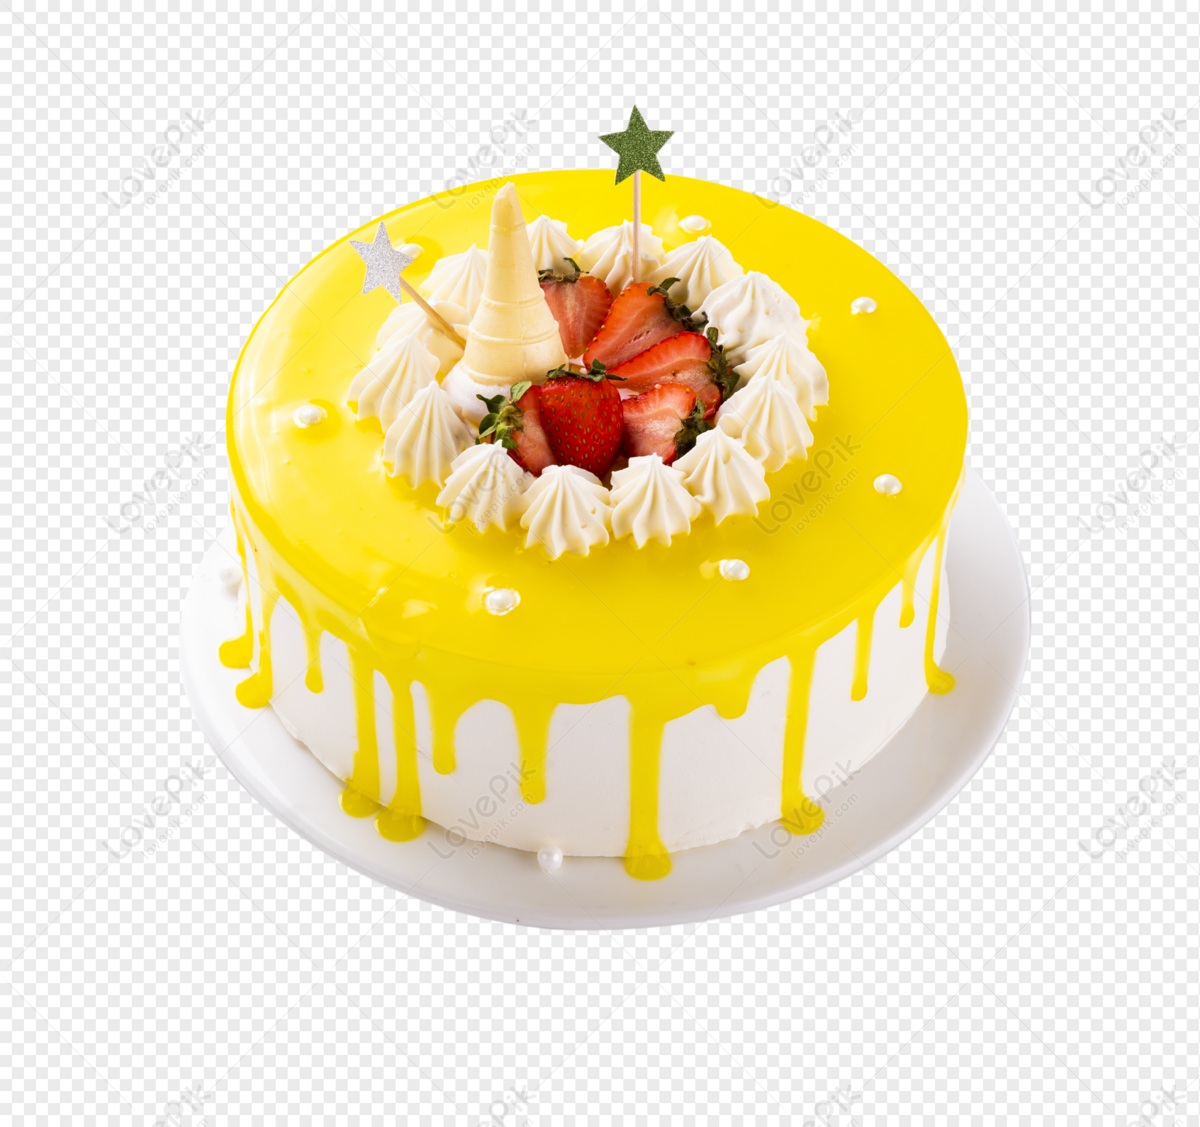 Amazing Pineapple Cake | Yummy cake